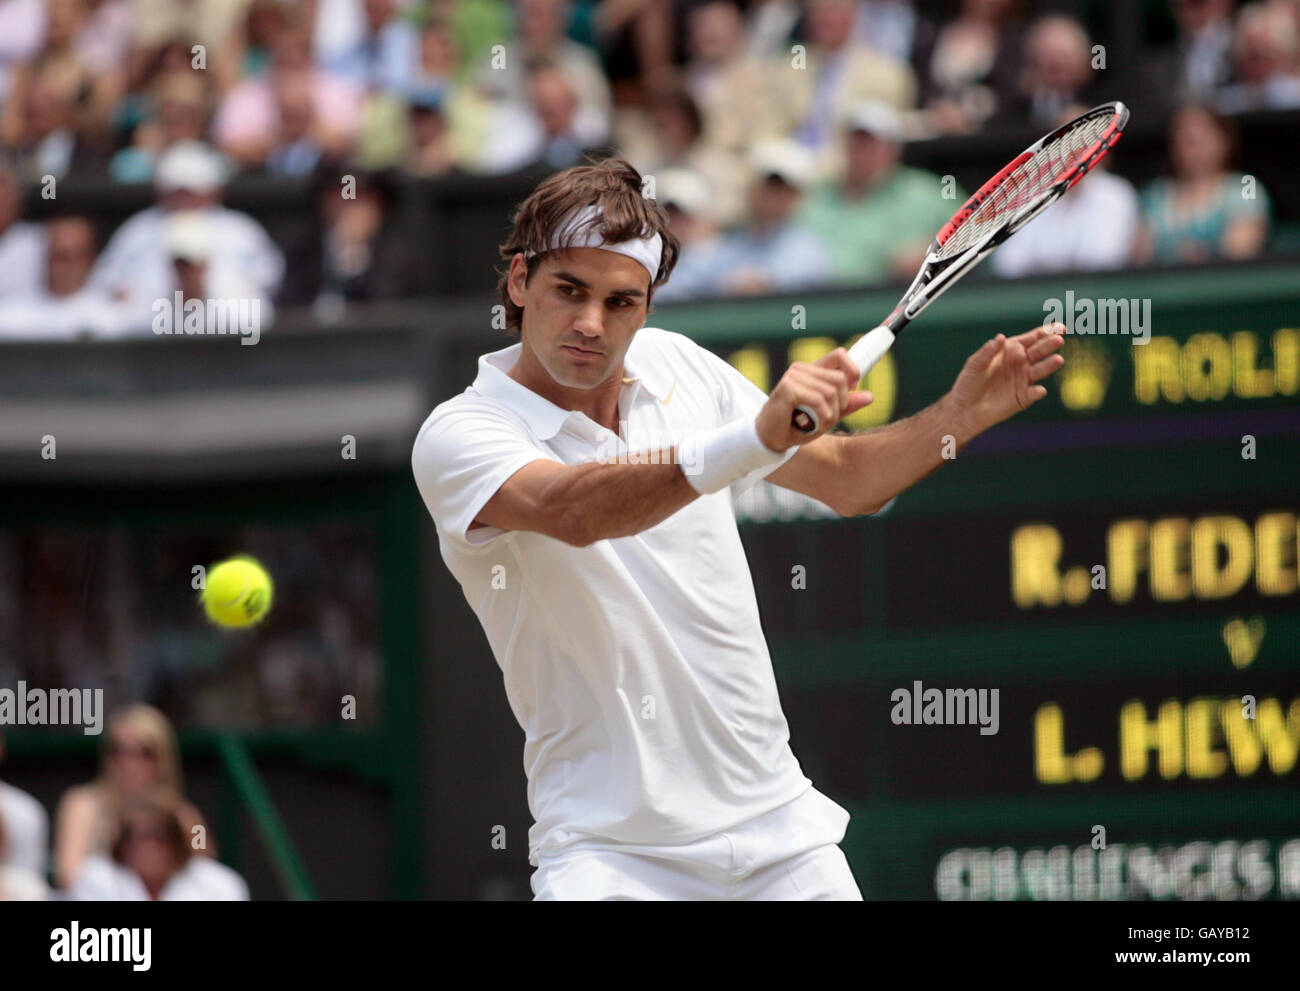 Roger Federer de Suisse en action contre Lleyton Hewitt d'Australie lors des championnats de Wimbledon 2008 au All England tennis Club de Wimbledon. Banque D'Images